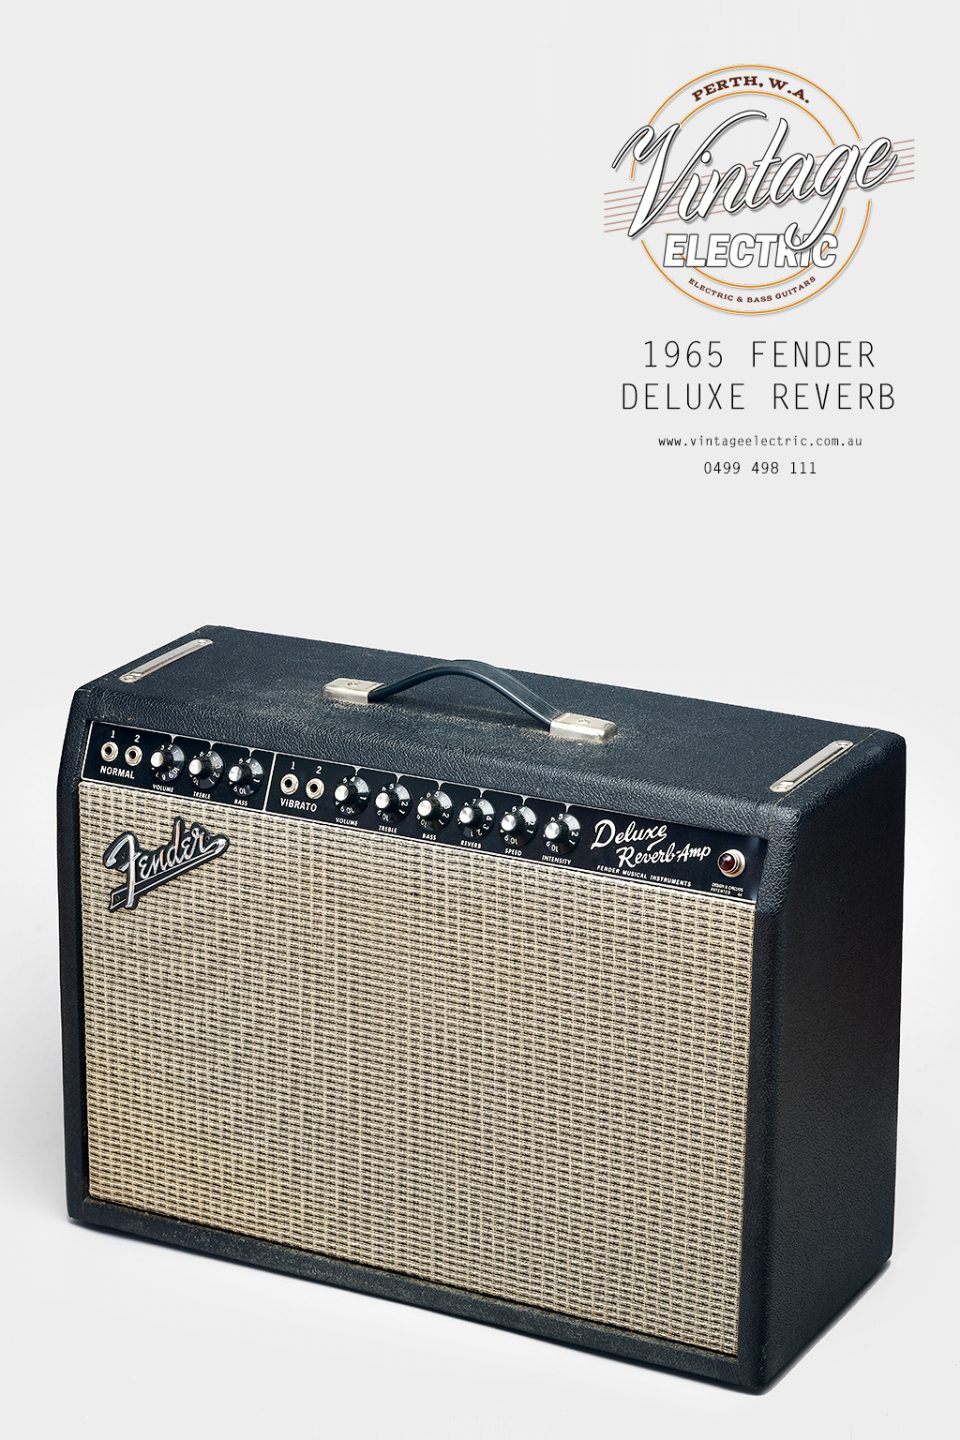 1965 Fender Deluxe Reverb 1